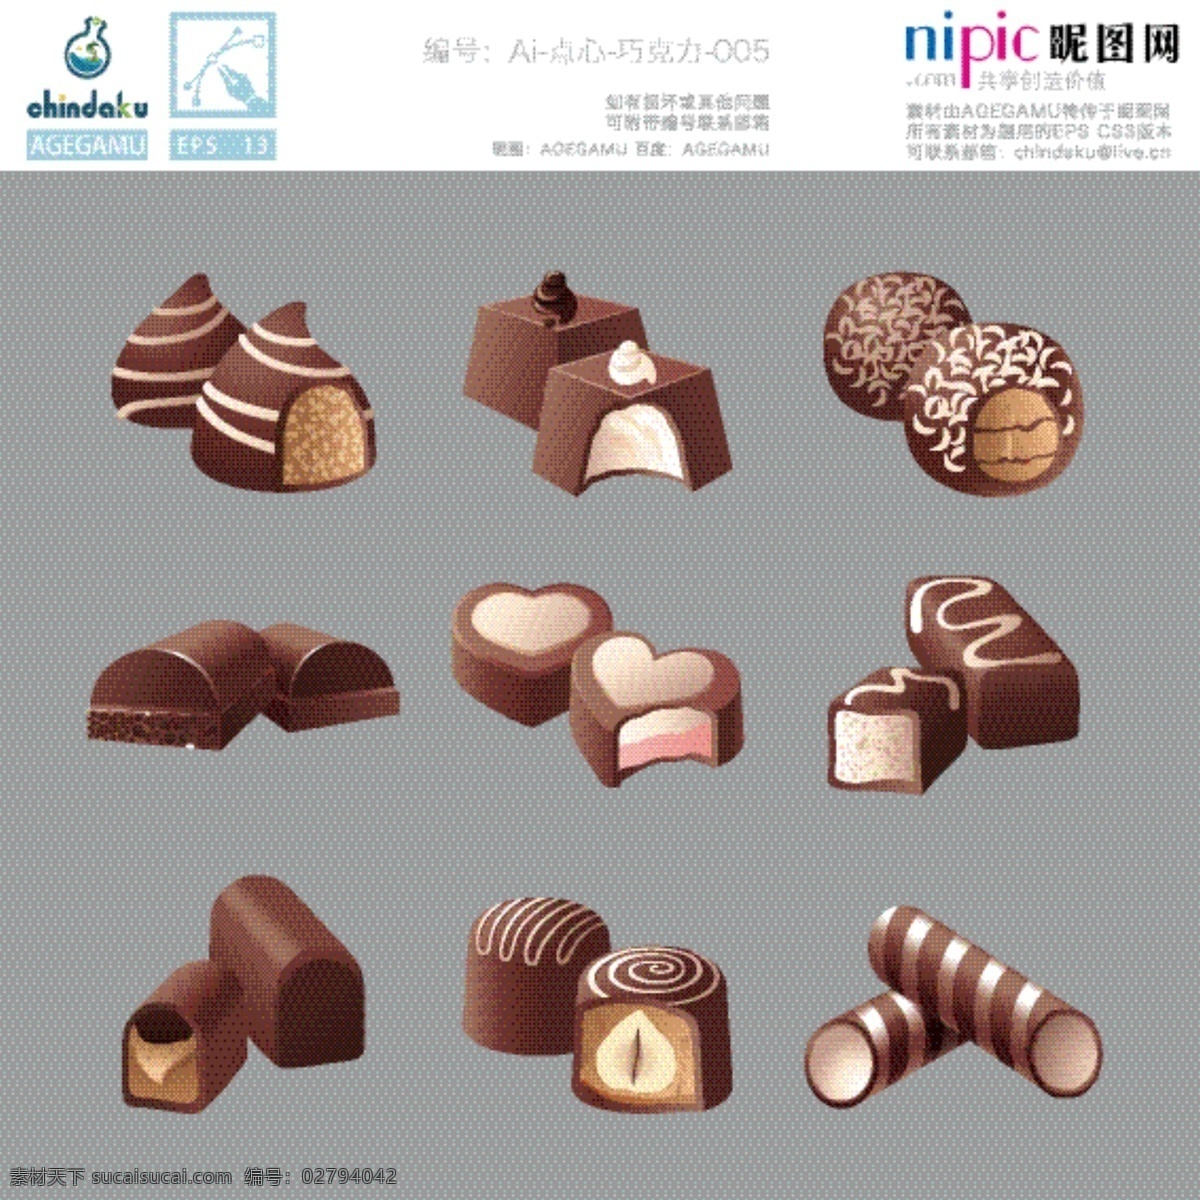 各种巧克力 心形 底图 食品 咖啡 巧克力 流线型 墨迹 小清新 包装 蛋糕 现代 花纹 简约 糯糯 chindaku 水果